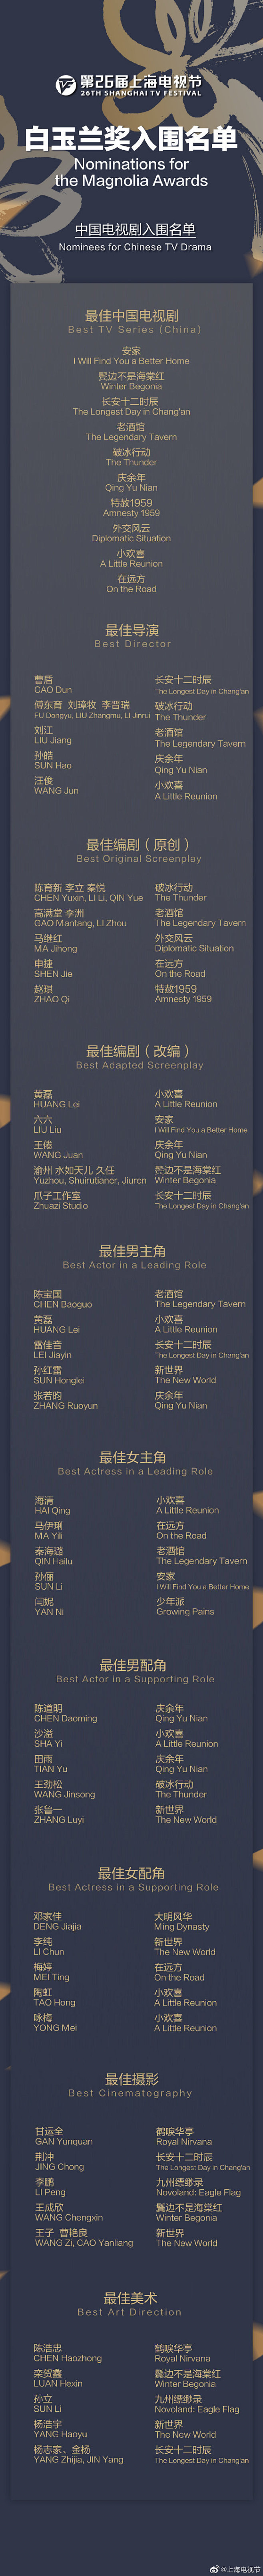 #上海电视节# #白玉兰入围名单# 第2...